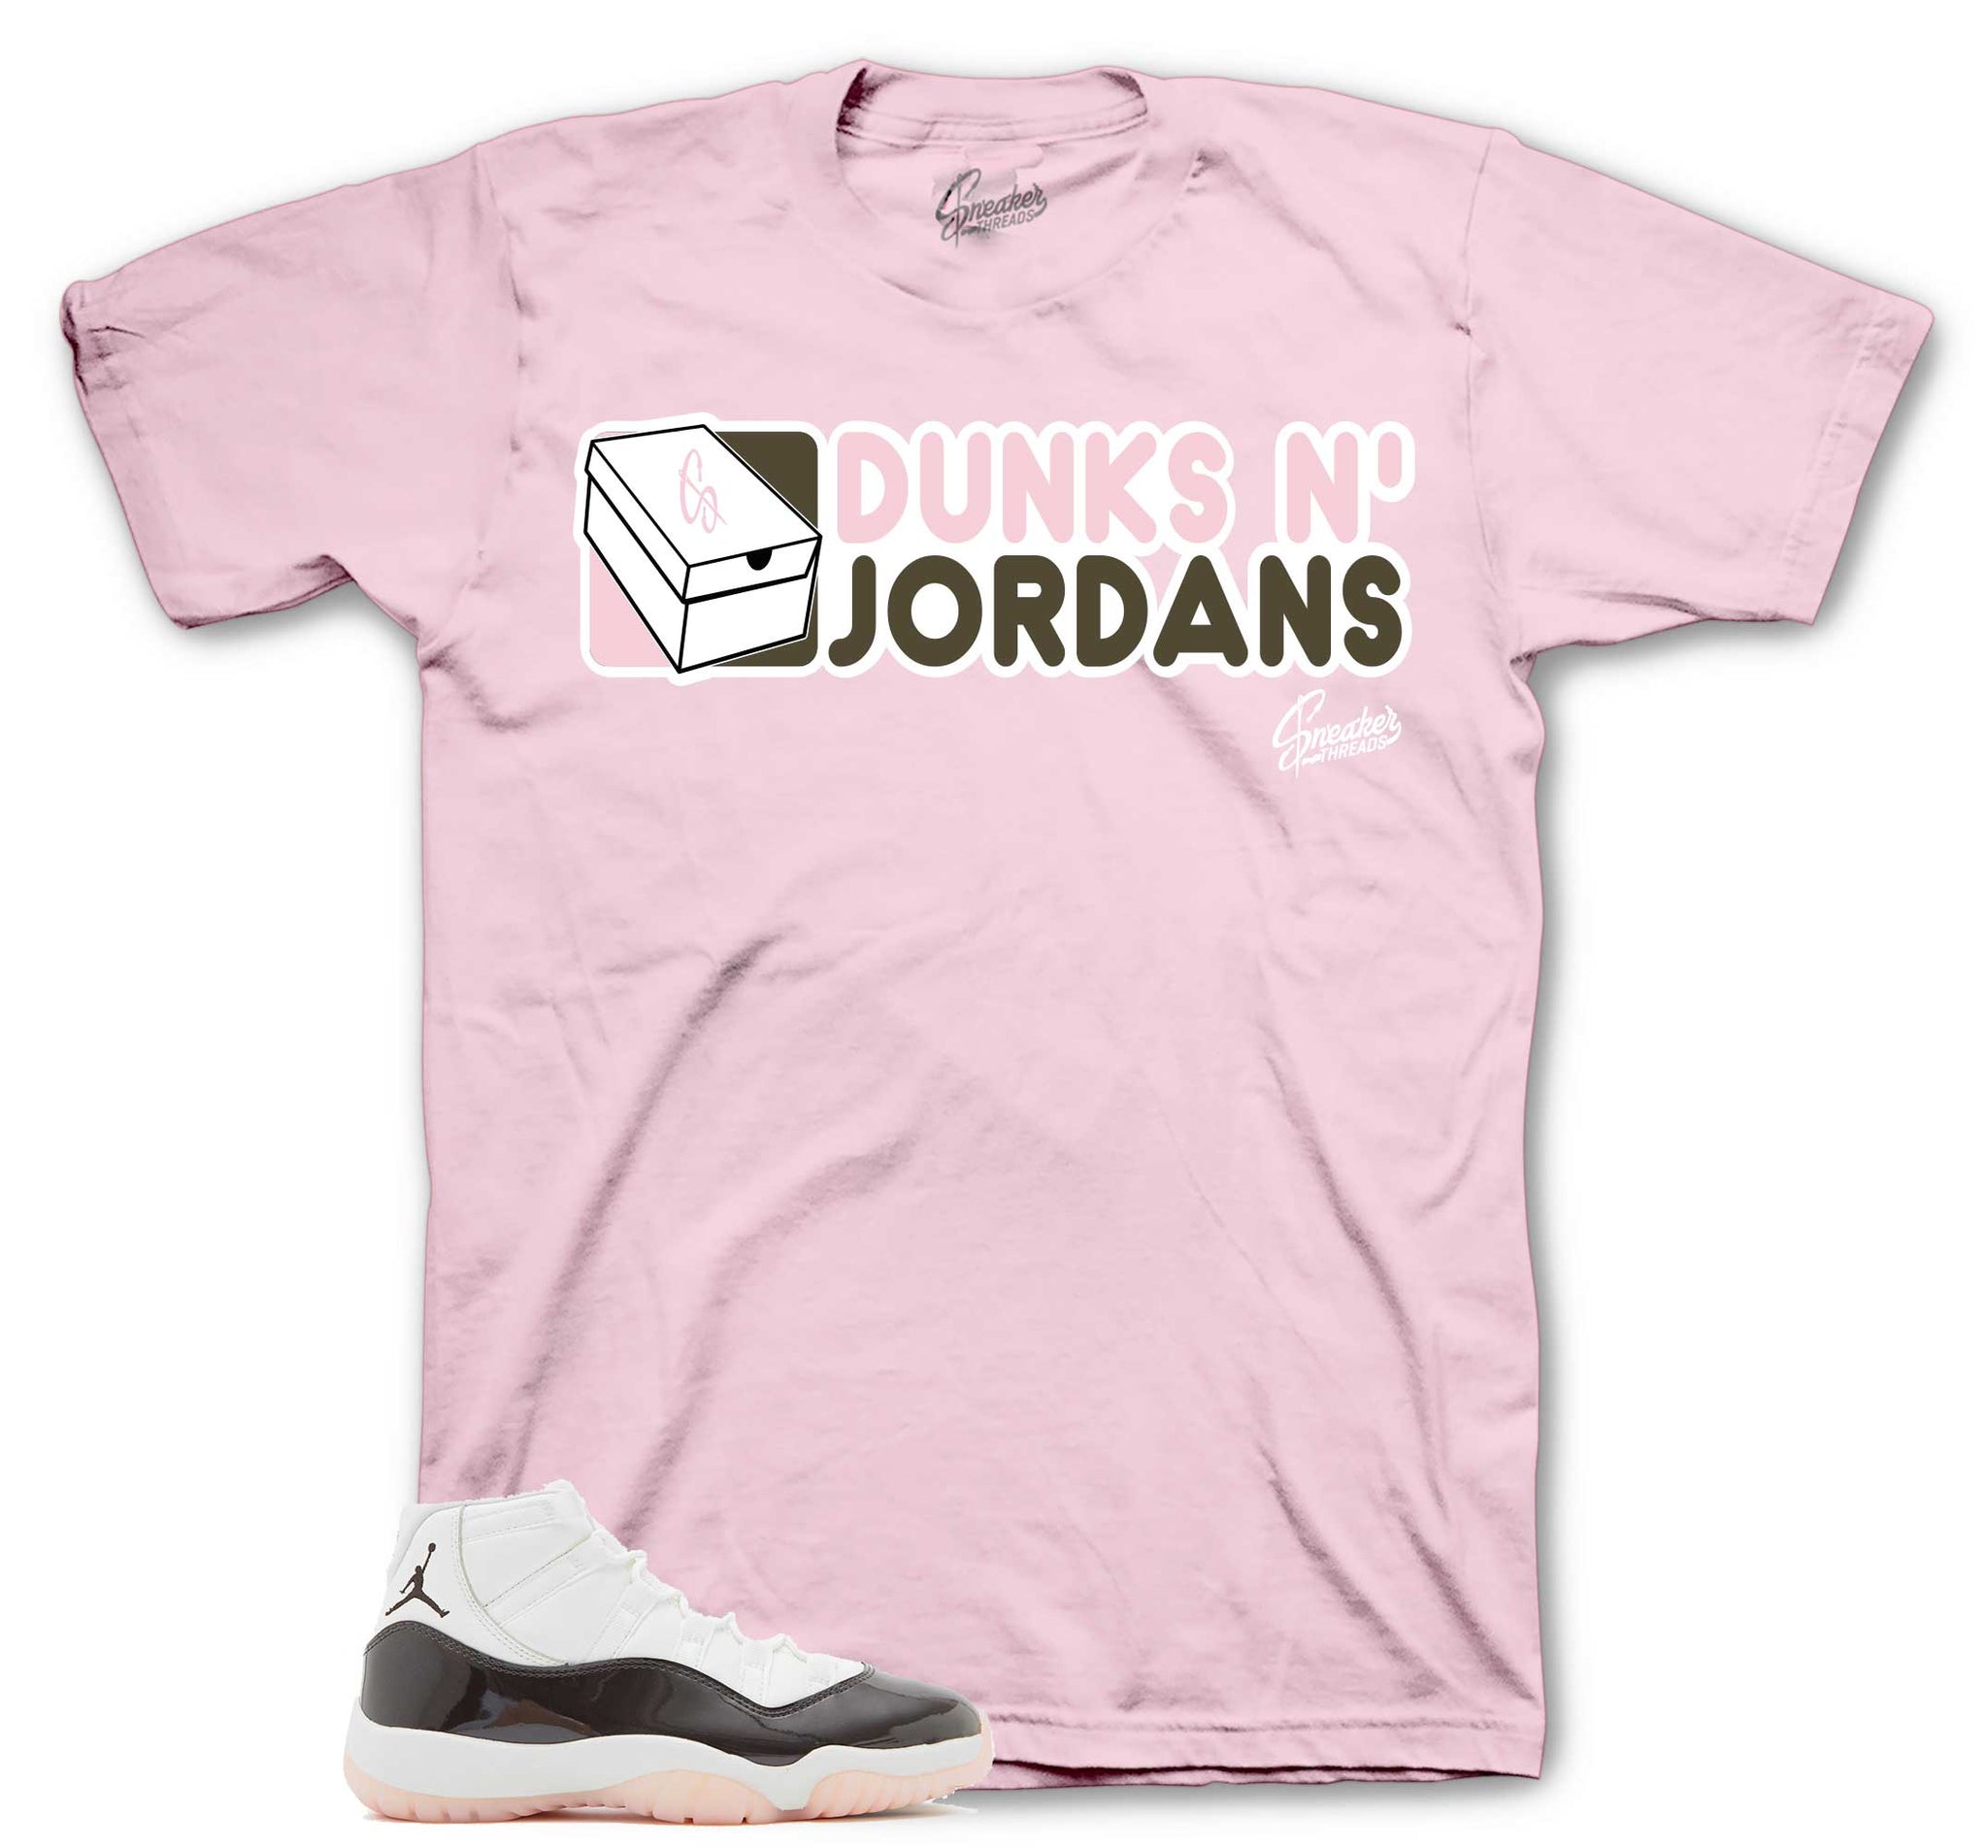 Dunks N Jordans T-Shirt - Retro 11 Neapolitan Shirt